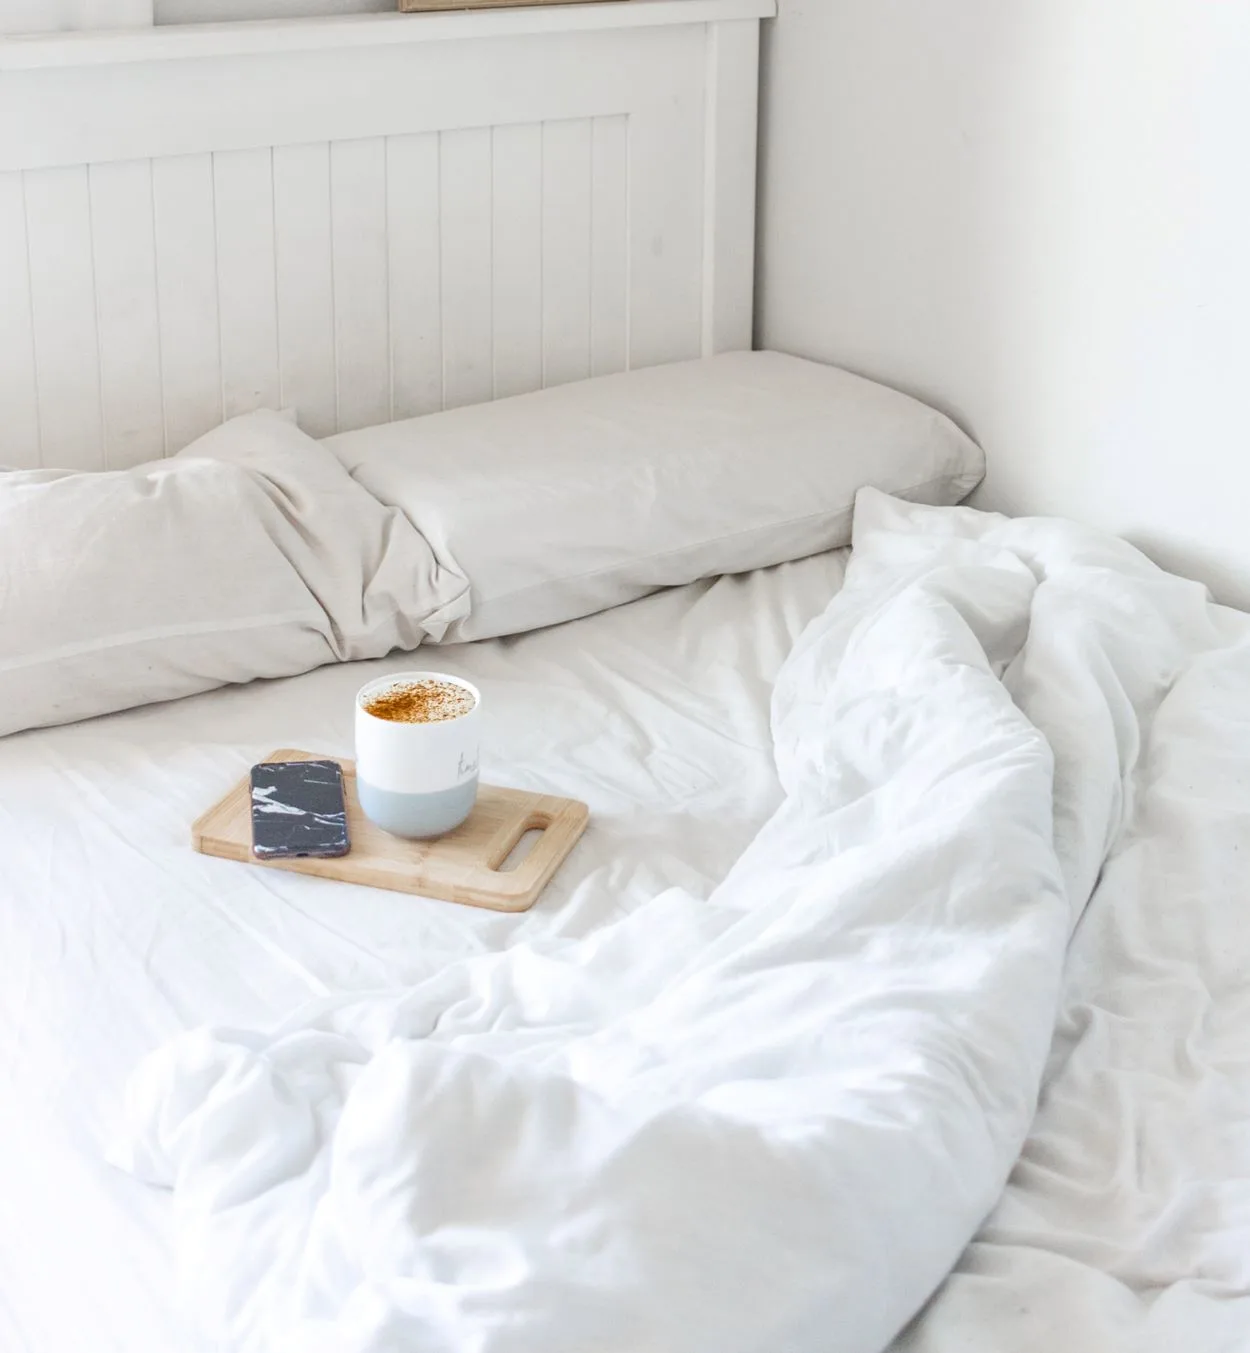  Која е разликата помеѓу местење и правење кревет? (Одговорено) – Сите разлики